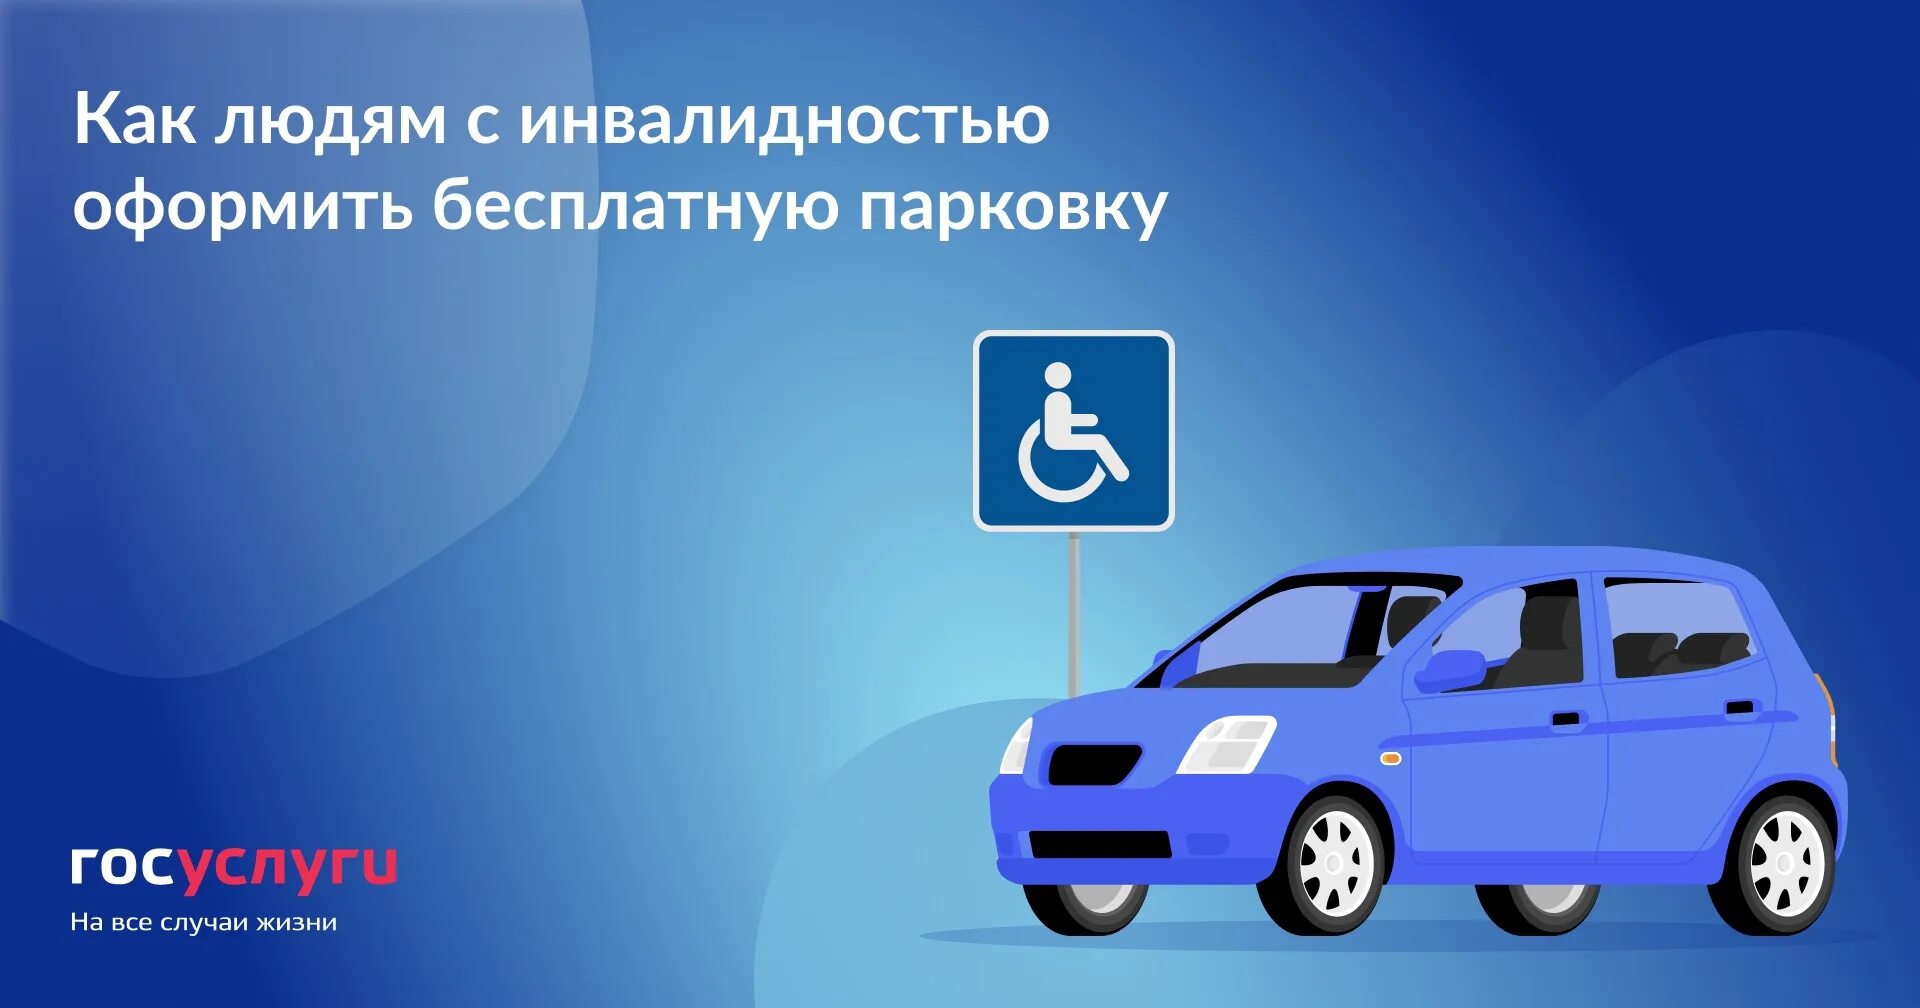 Можно ли инвалидам парковаться на платных. Парковка для людей с инвалидностью. Автомобиль управляемый инвалидом. Символ парковка для людей с инвалидностью. Как оформить бесплатную парковку для граждан с инвалидностью?.